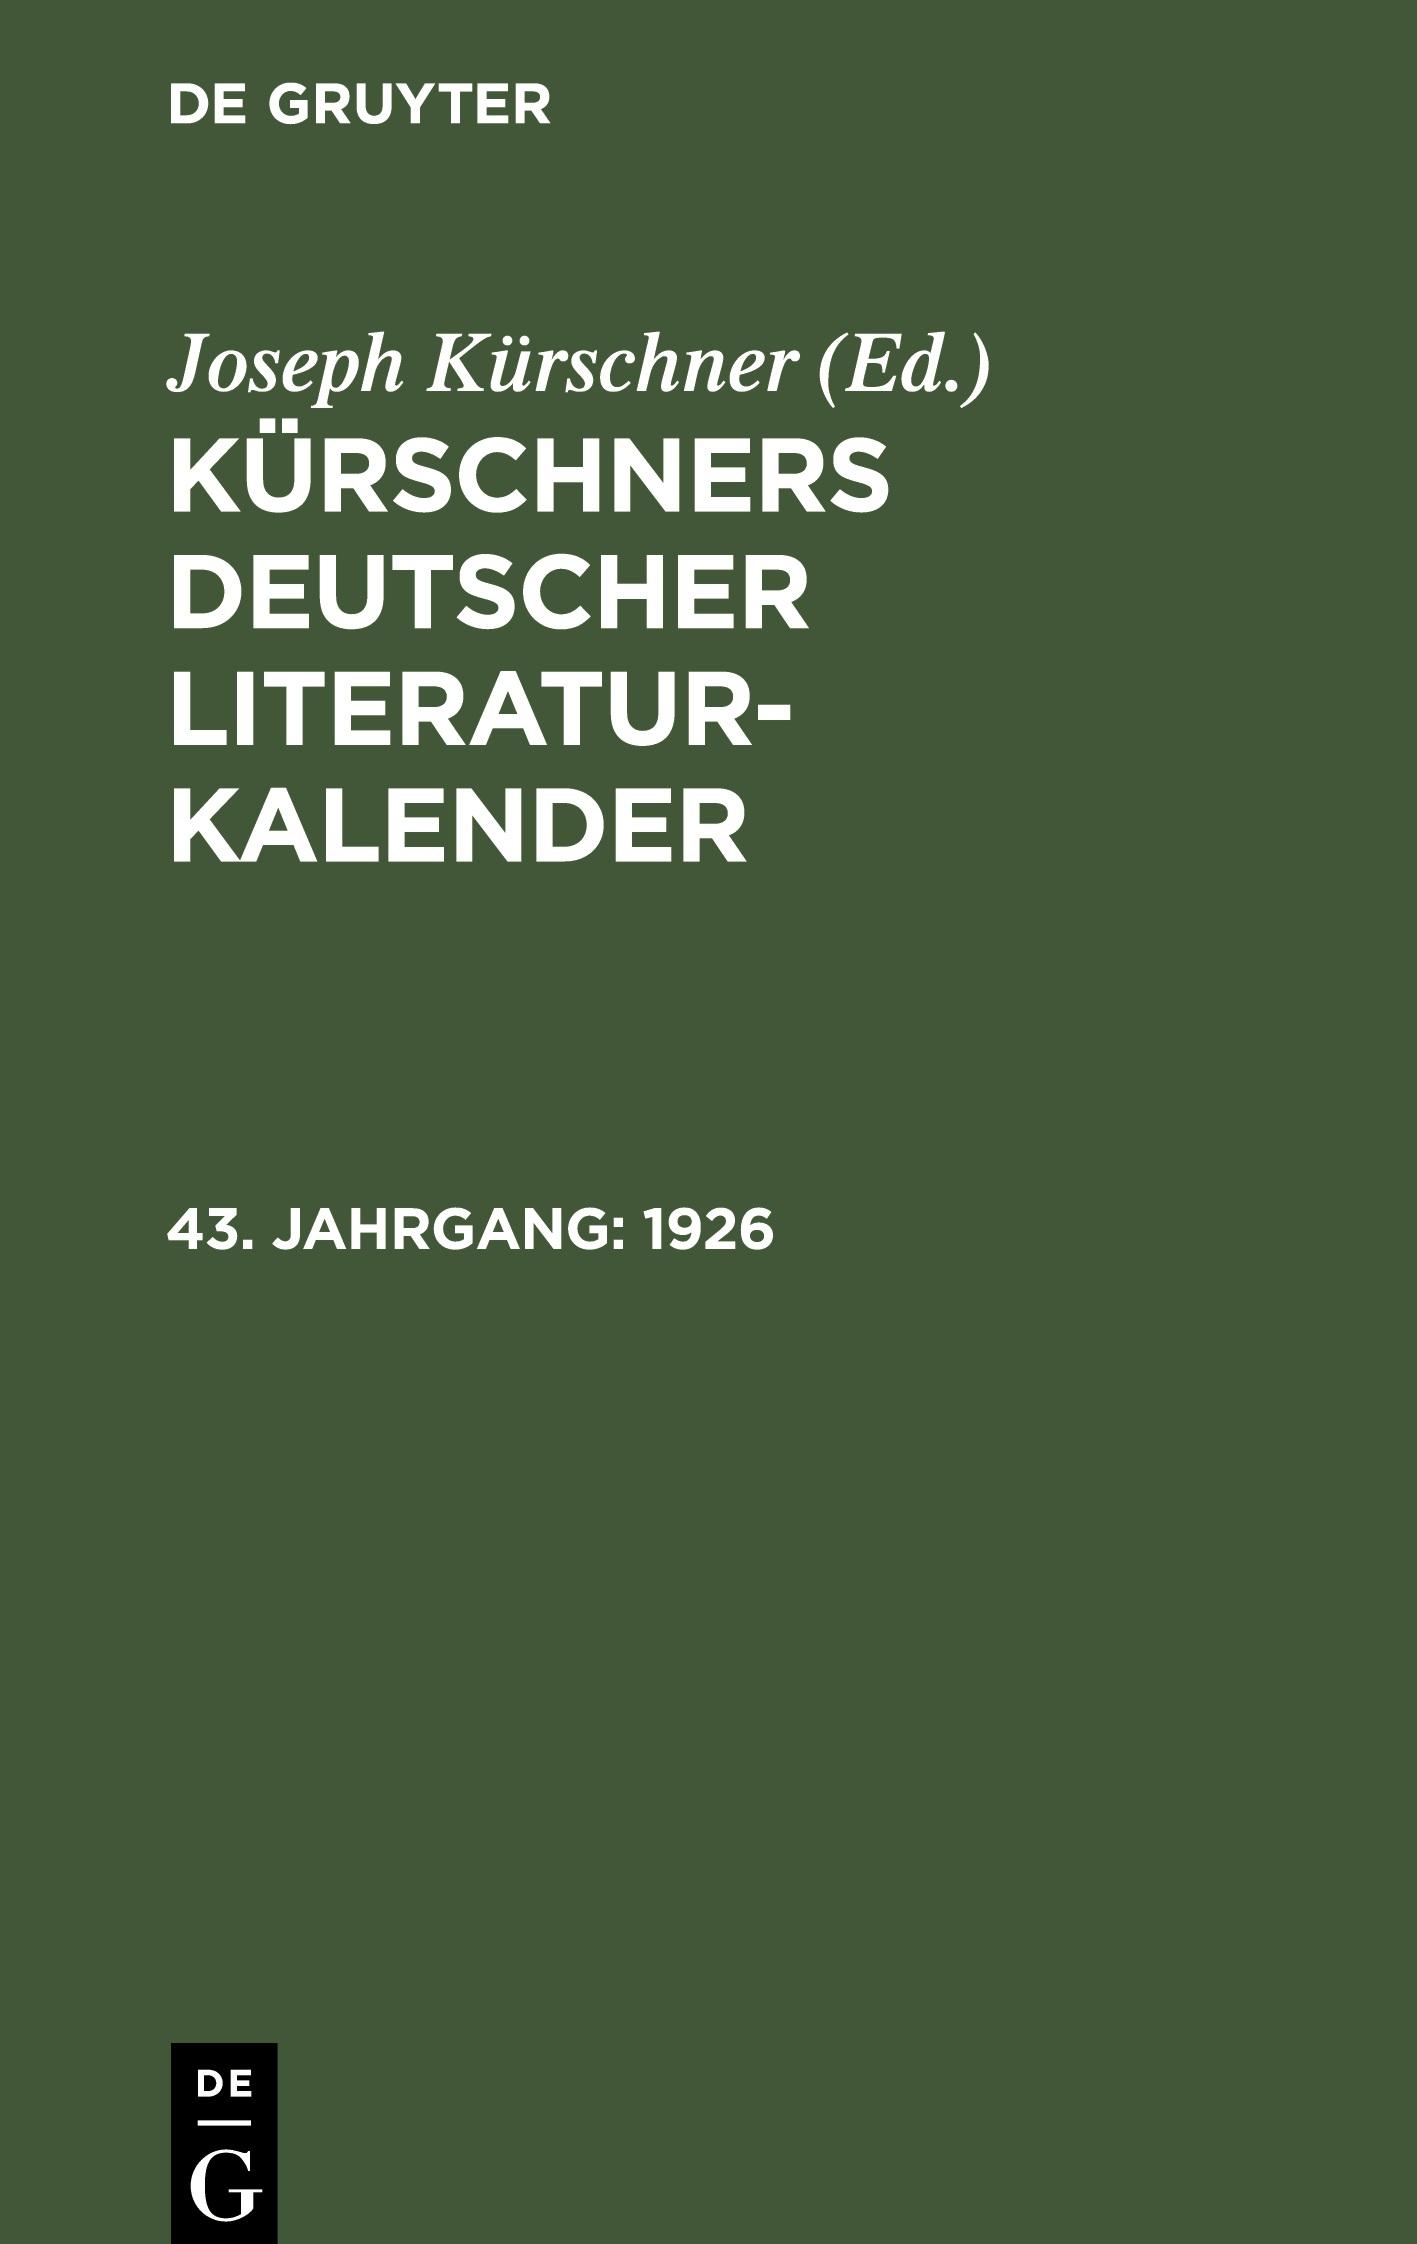 Kuerschners Deutscher Literatur-Kalender, 43. Jahrgang, Kuerschners Deutscher Literatur-Kalender (1926)